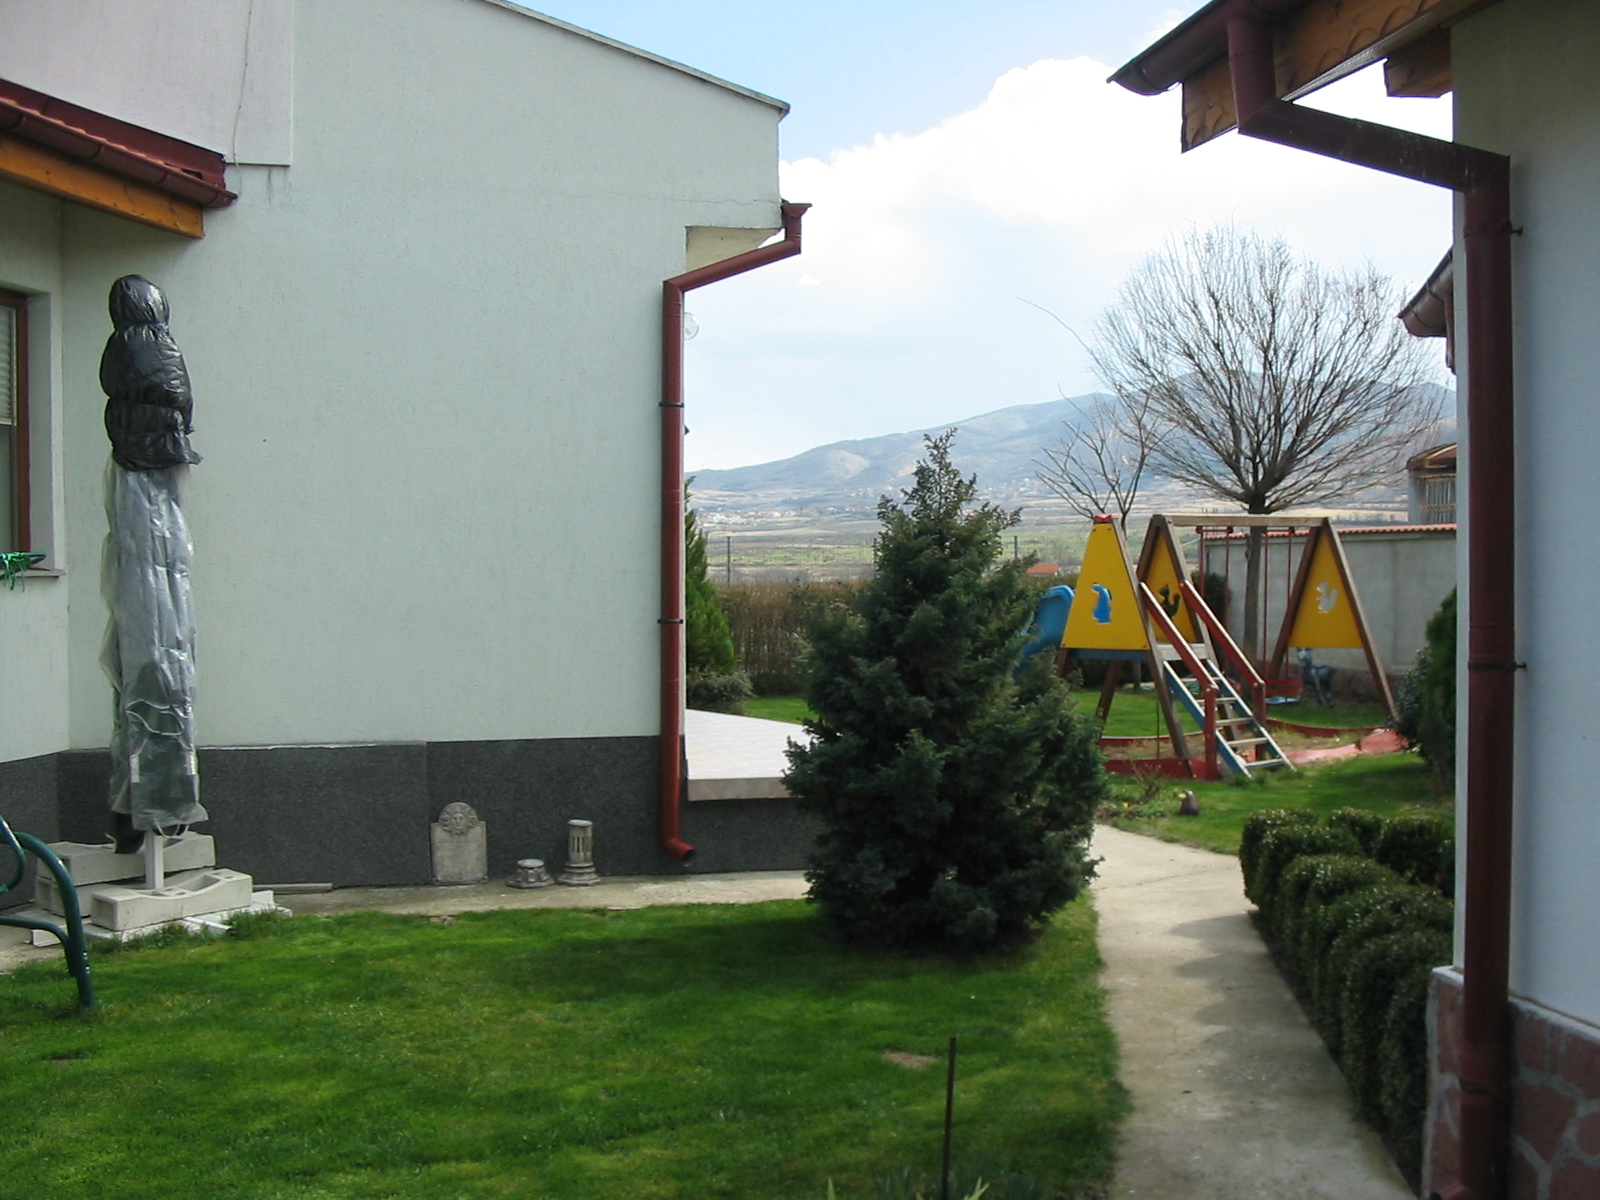 Къща с параклис /енергия и простор/ в полето, с гледка към Родопите, на 10 км. от Пловдив